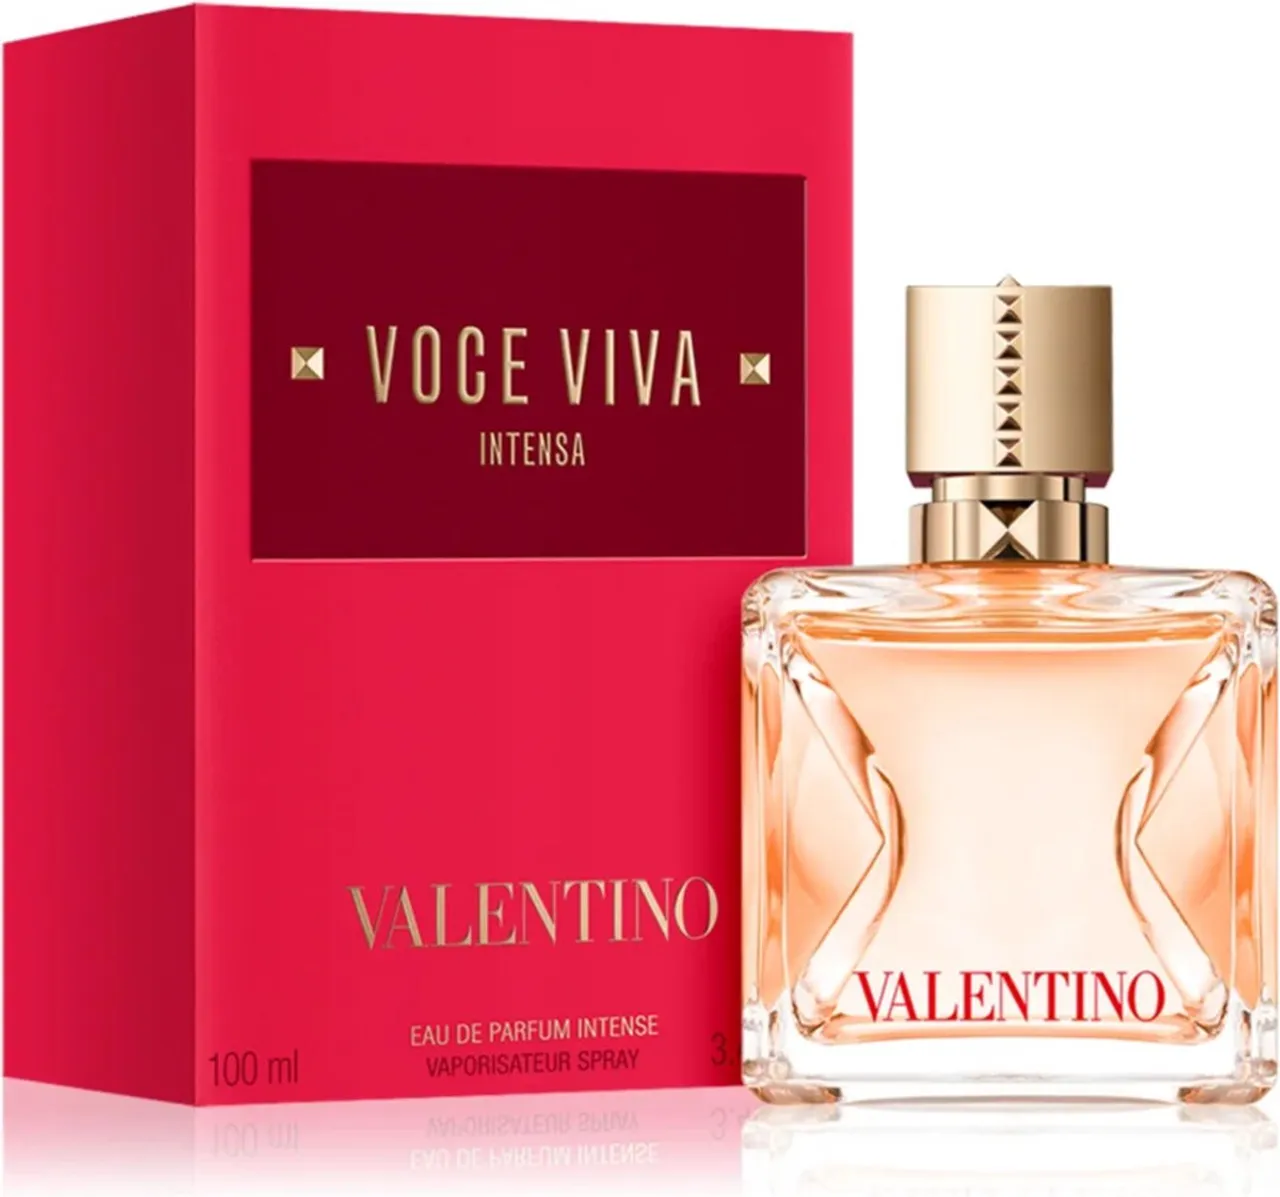 Valentino Voce Viva Intensa - 100 ml - eau de parfum spray - damesparfum